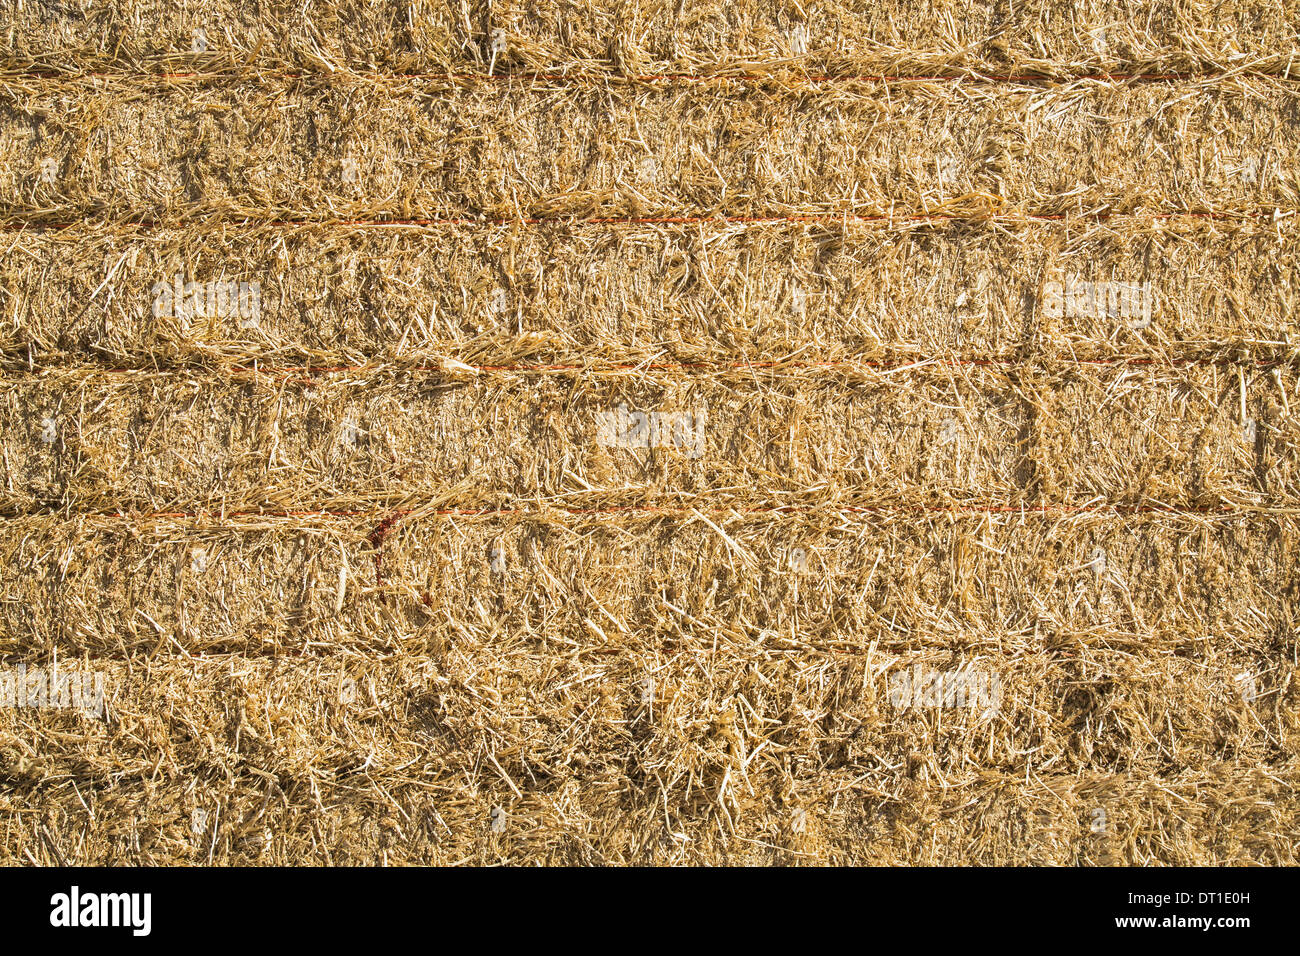 Stato di Washington USA balle di fieno impilate in su erba secca culmi in colli Foto Stock